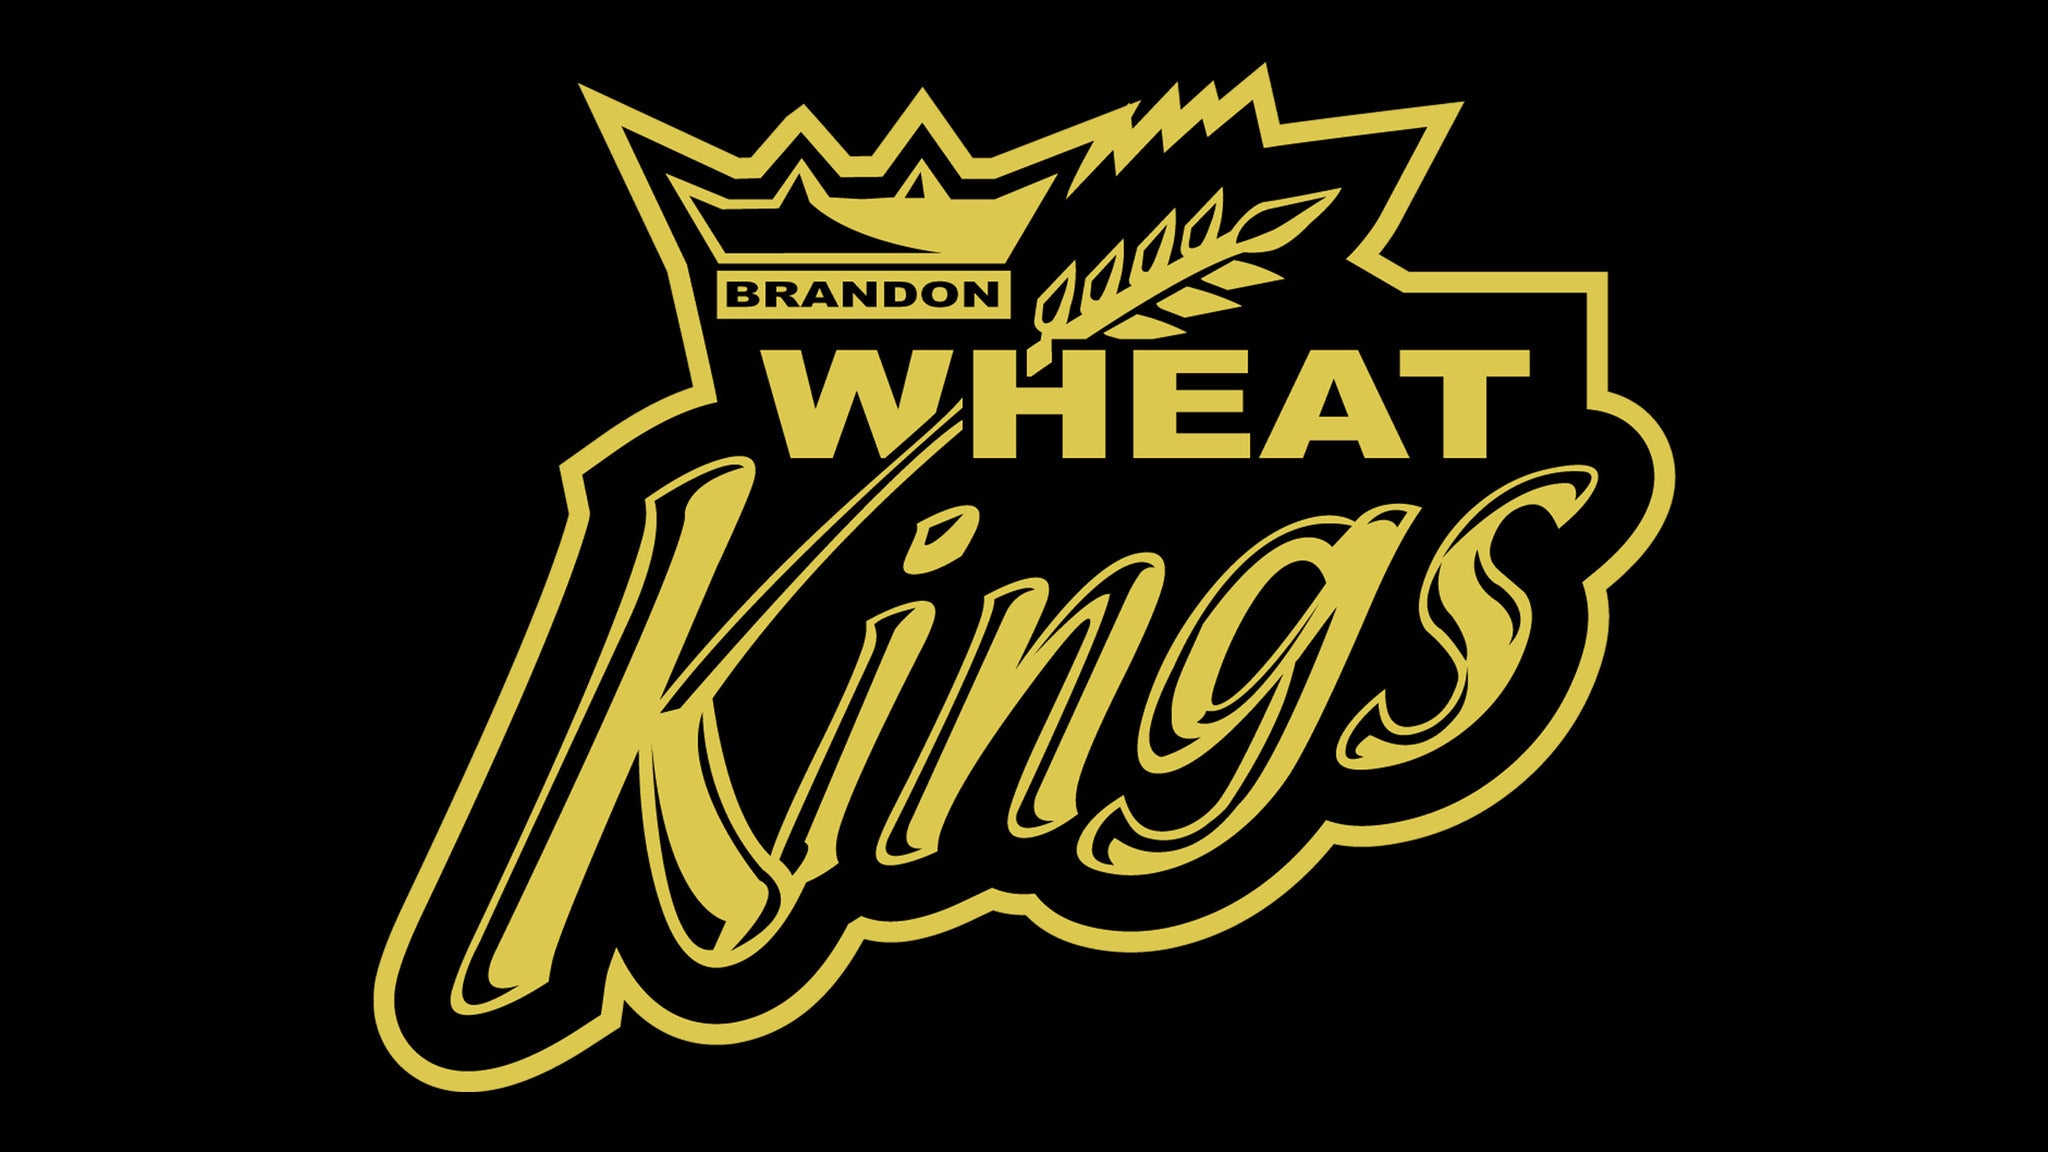 Brandon Wheat Kings vs. Red Deer Rebels in Brandon promo photo for Family 4 Pack presale offer code